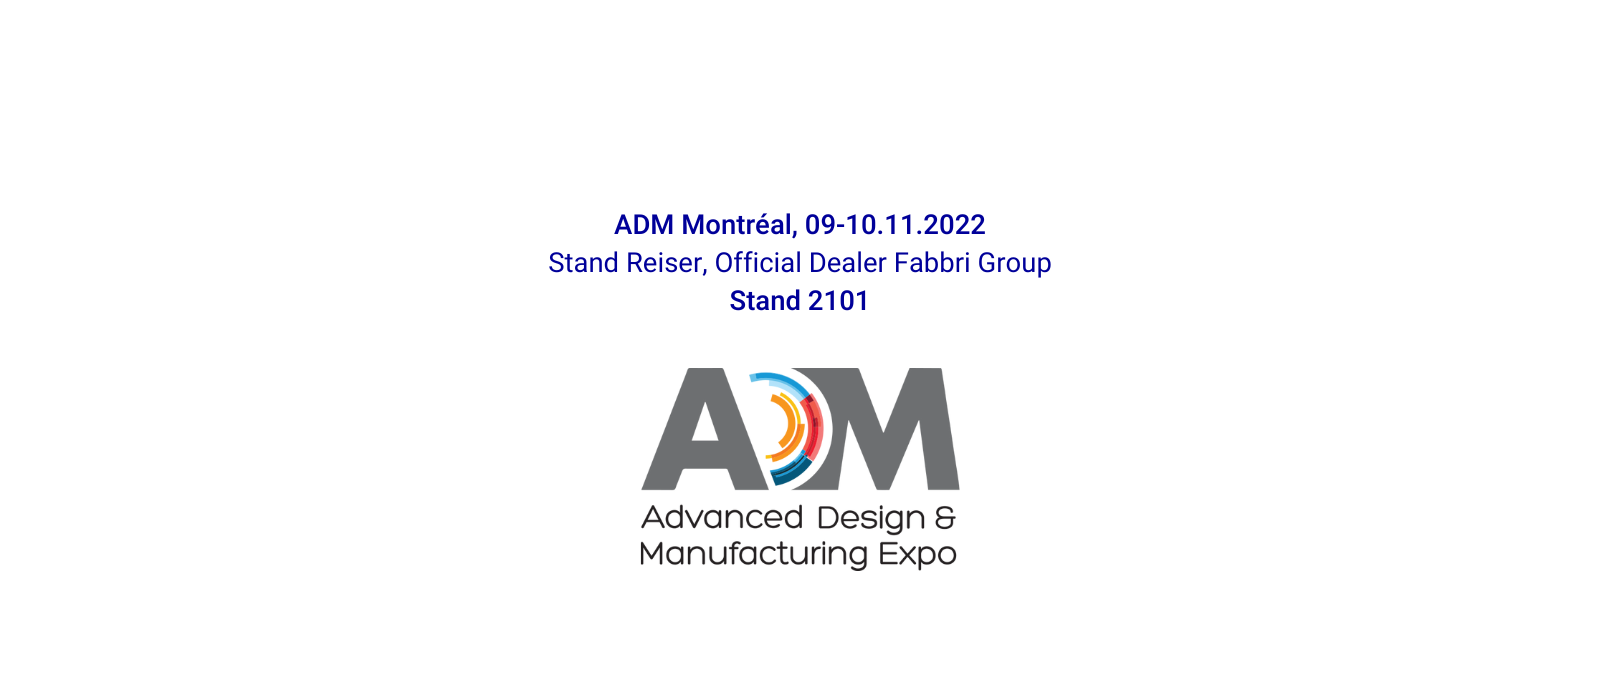 Pack Ex/ADM Montréal 2022: nuovo appuntamento per Gruppo Fabbri